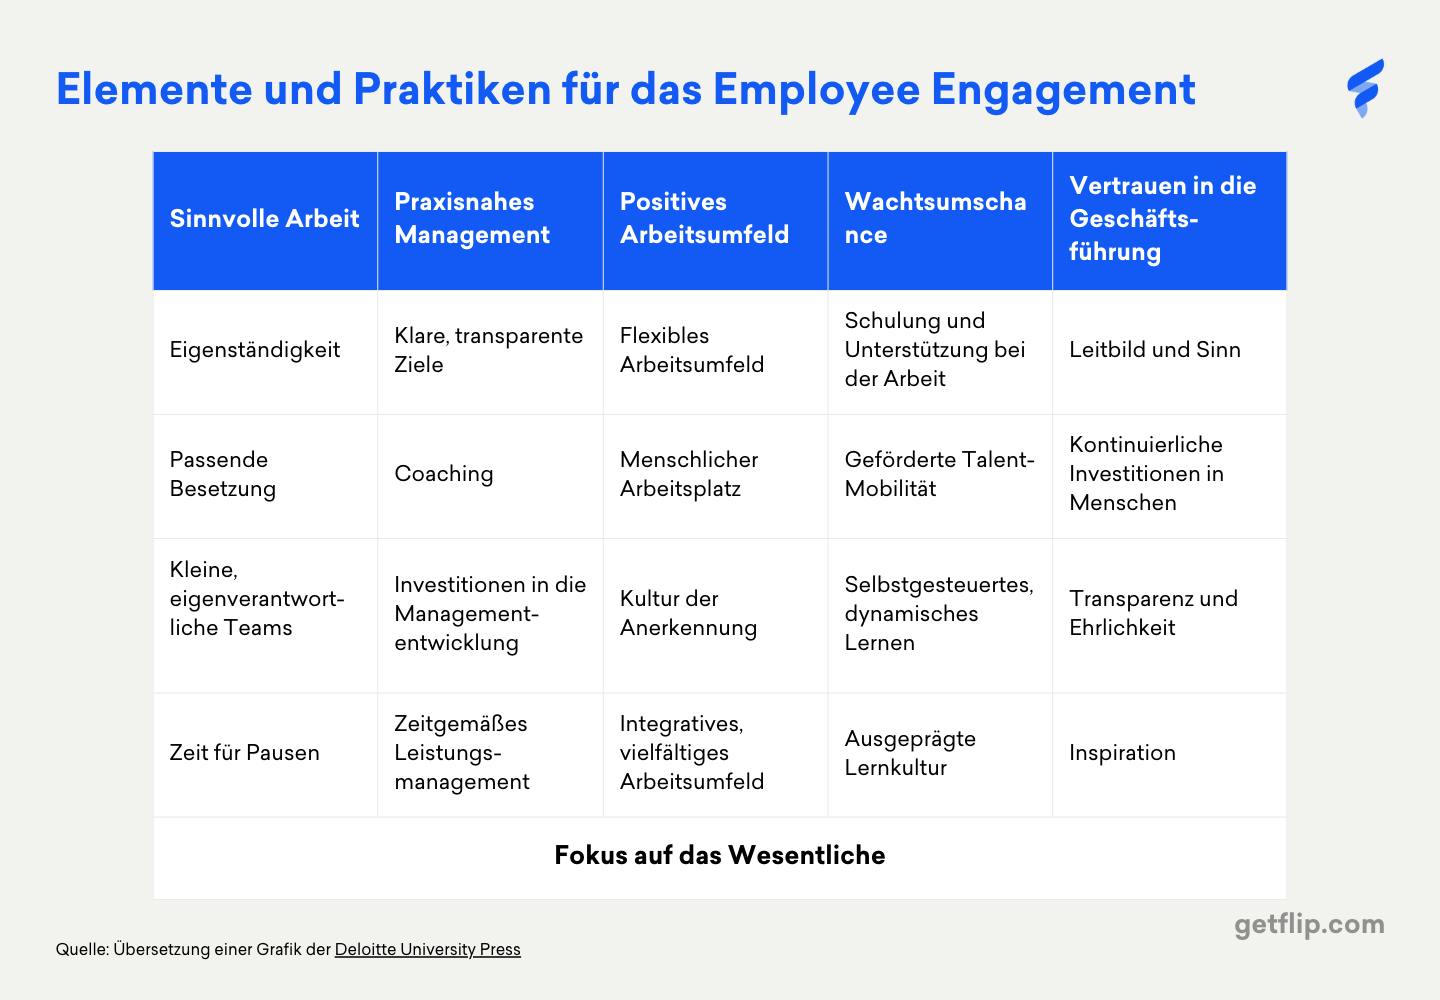 Tabelle mit Elementen und Praktiken für das Employee Engagement